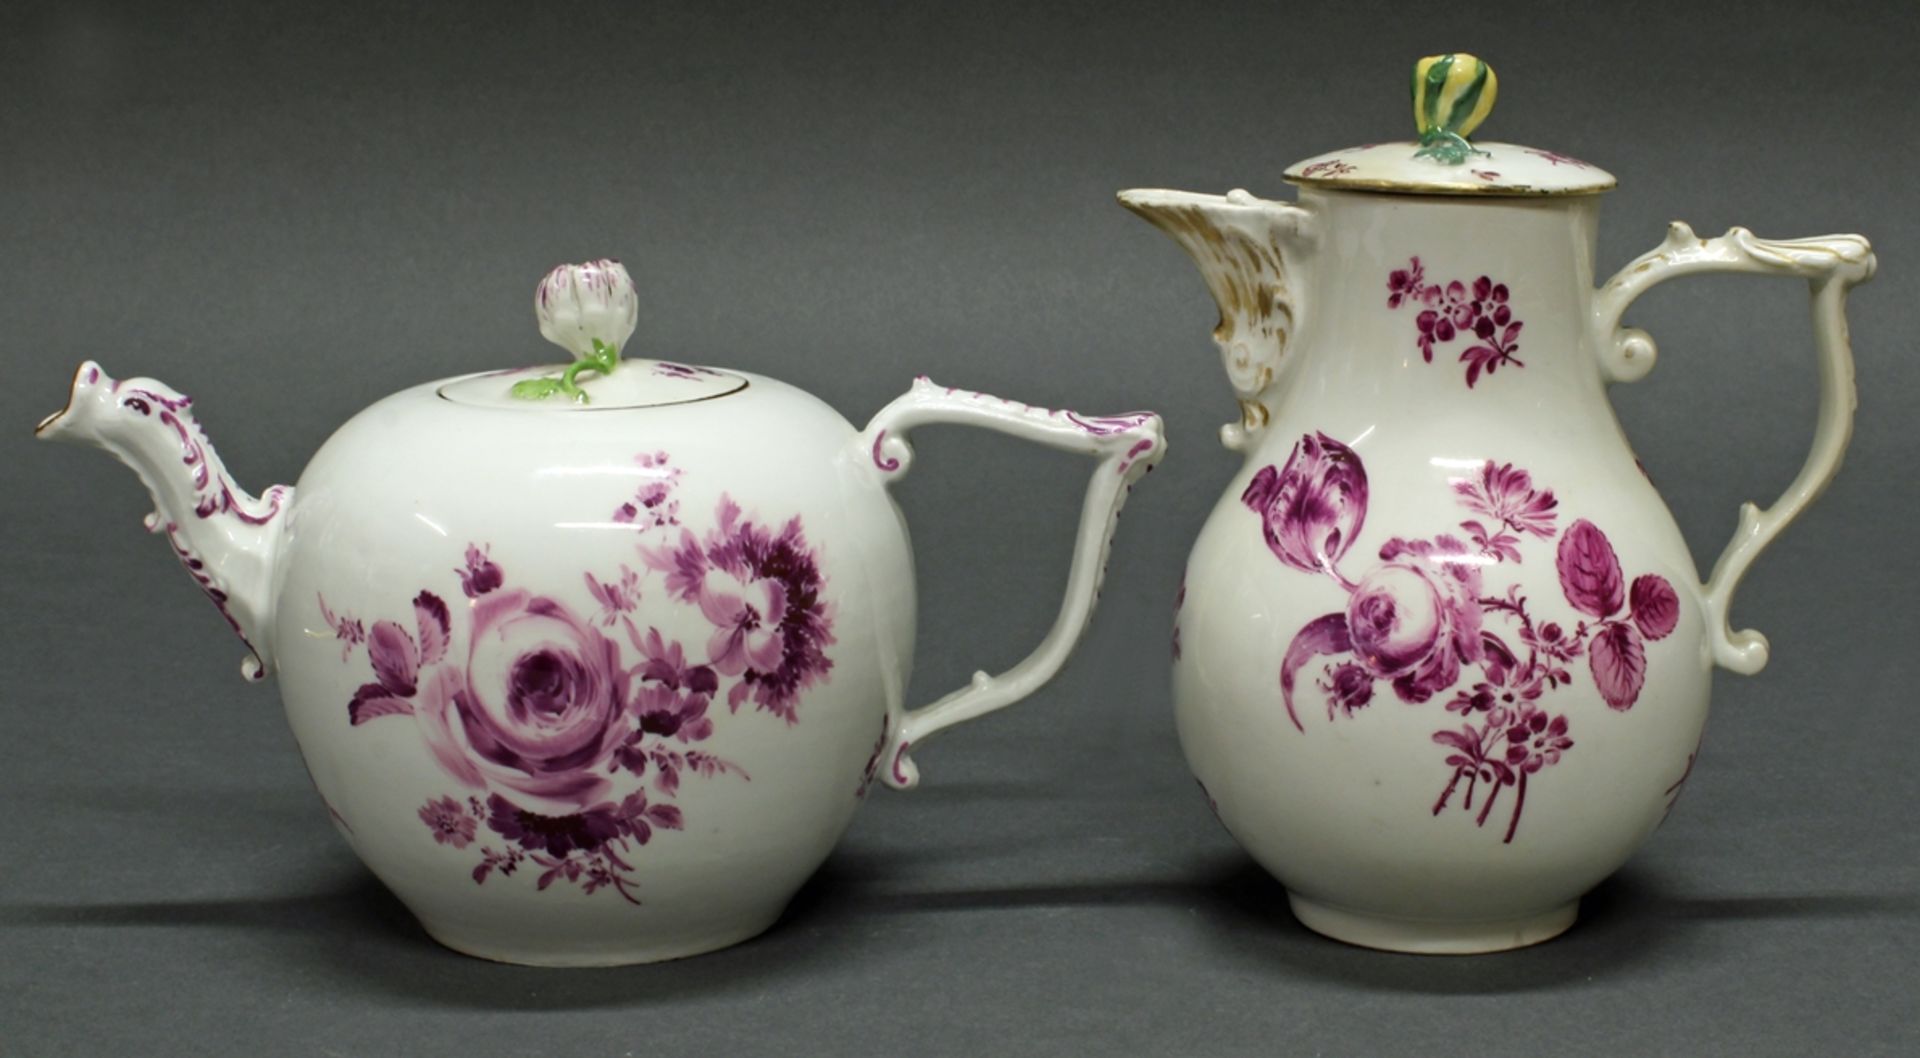 Kaffeekanne, Teekanne, Meissen, Schwertermarke, um 1765, gebauchte Gefäße mit Purpurblumen, J-Henke